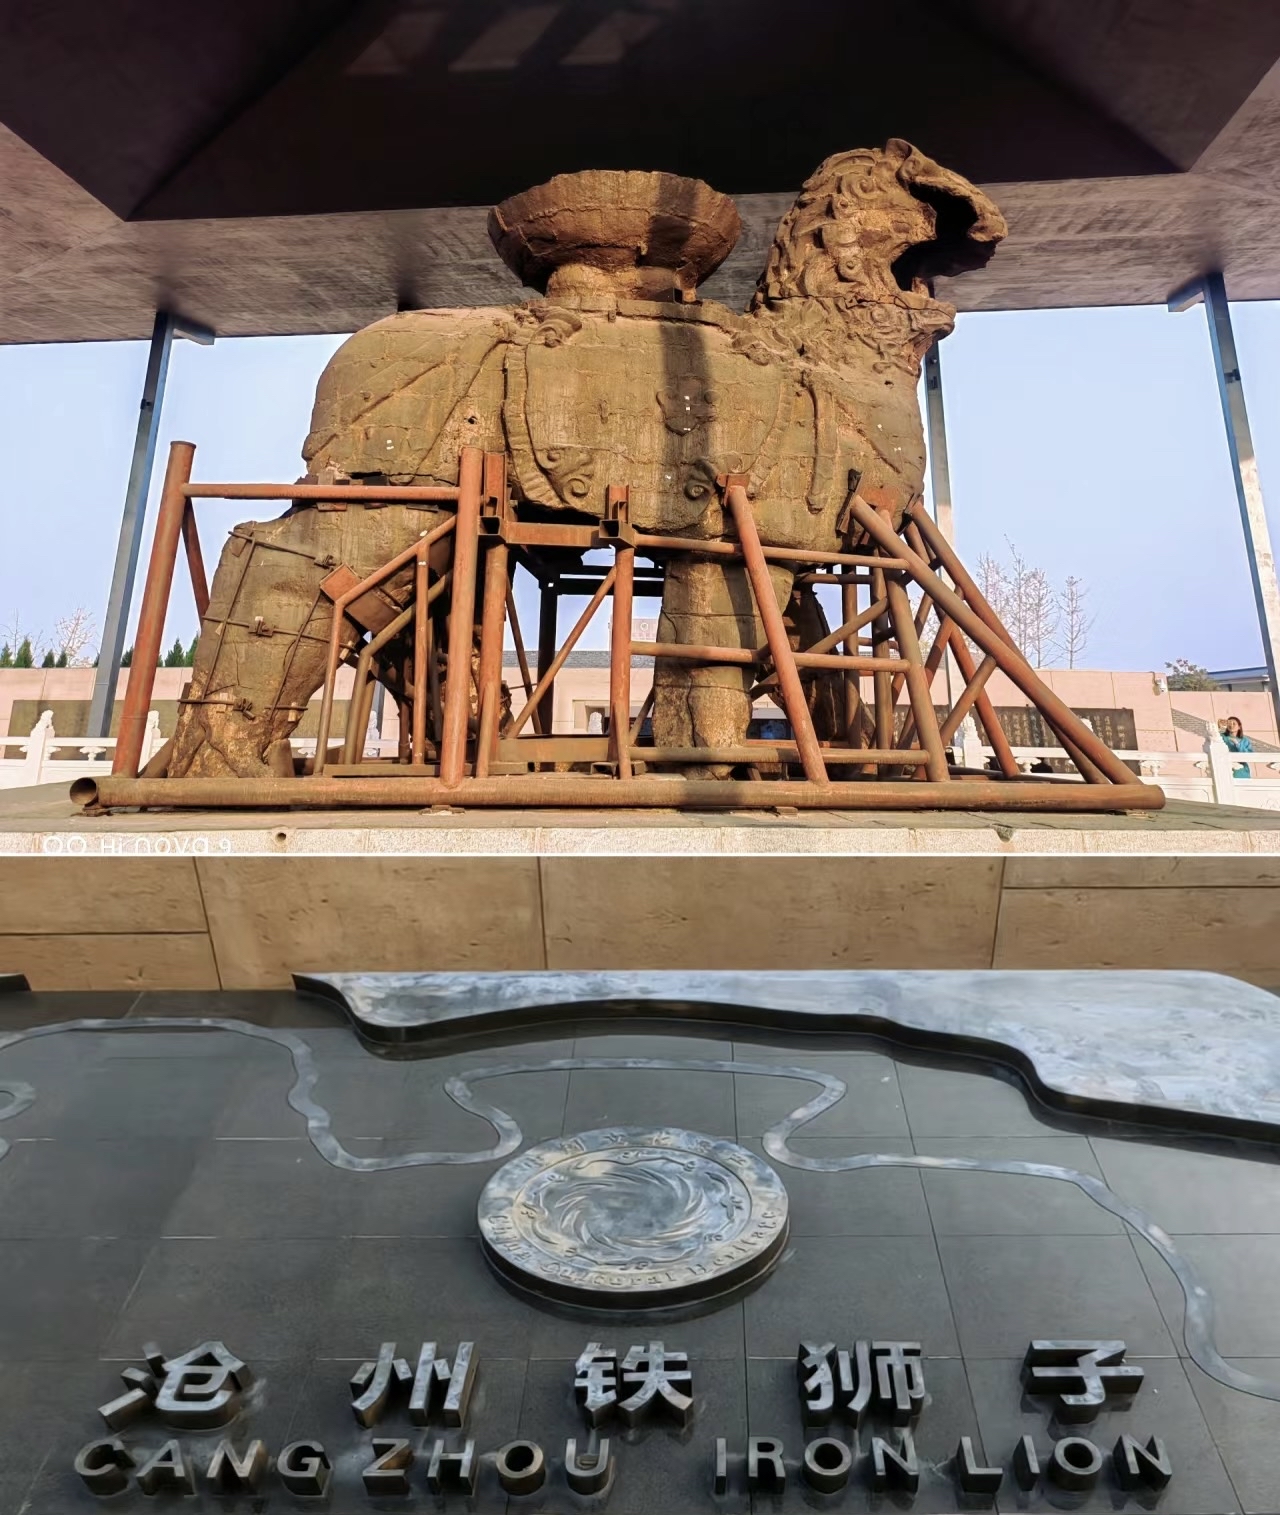 沧州铁狮子可是超级有名的哦！它又被称为“镇海吼”，是中国现存最古老、最大的铁质狮子造像，具有极高的历